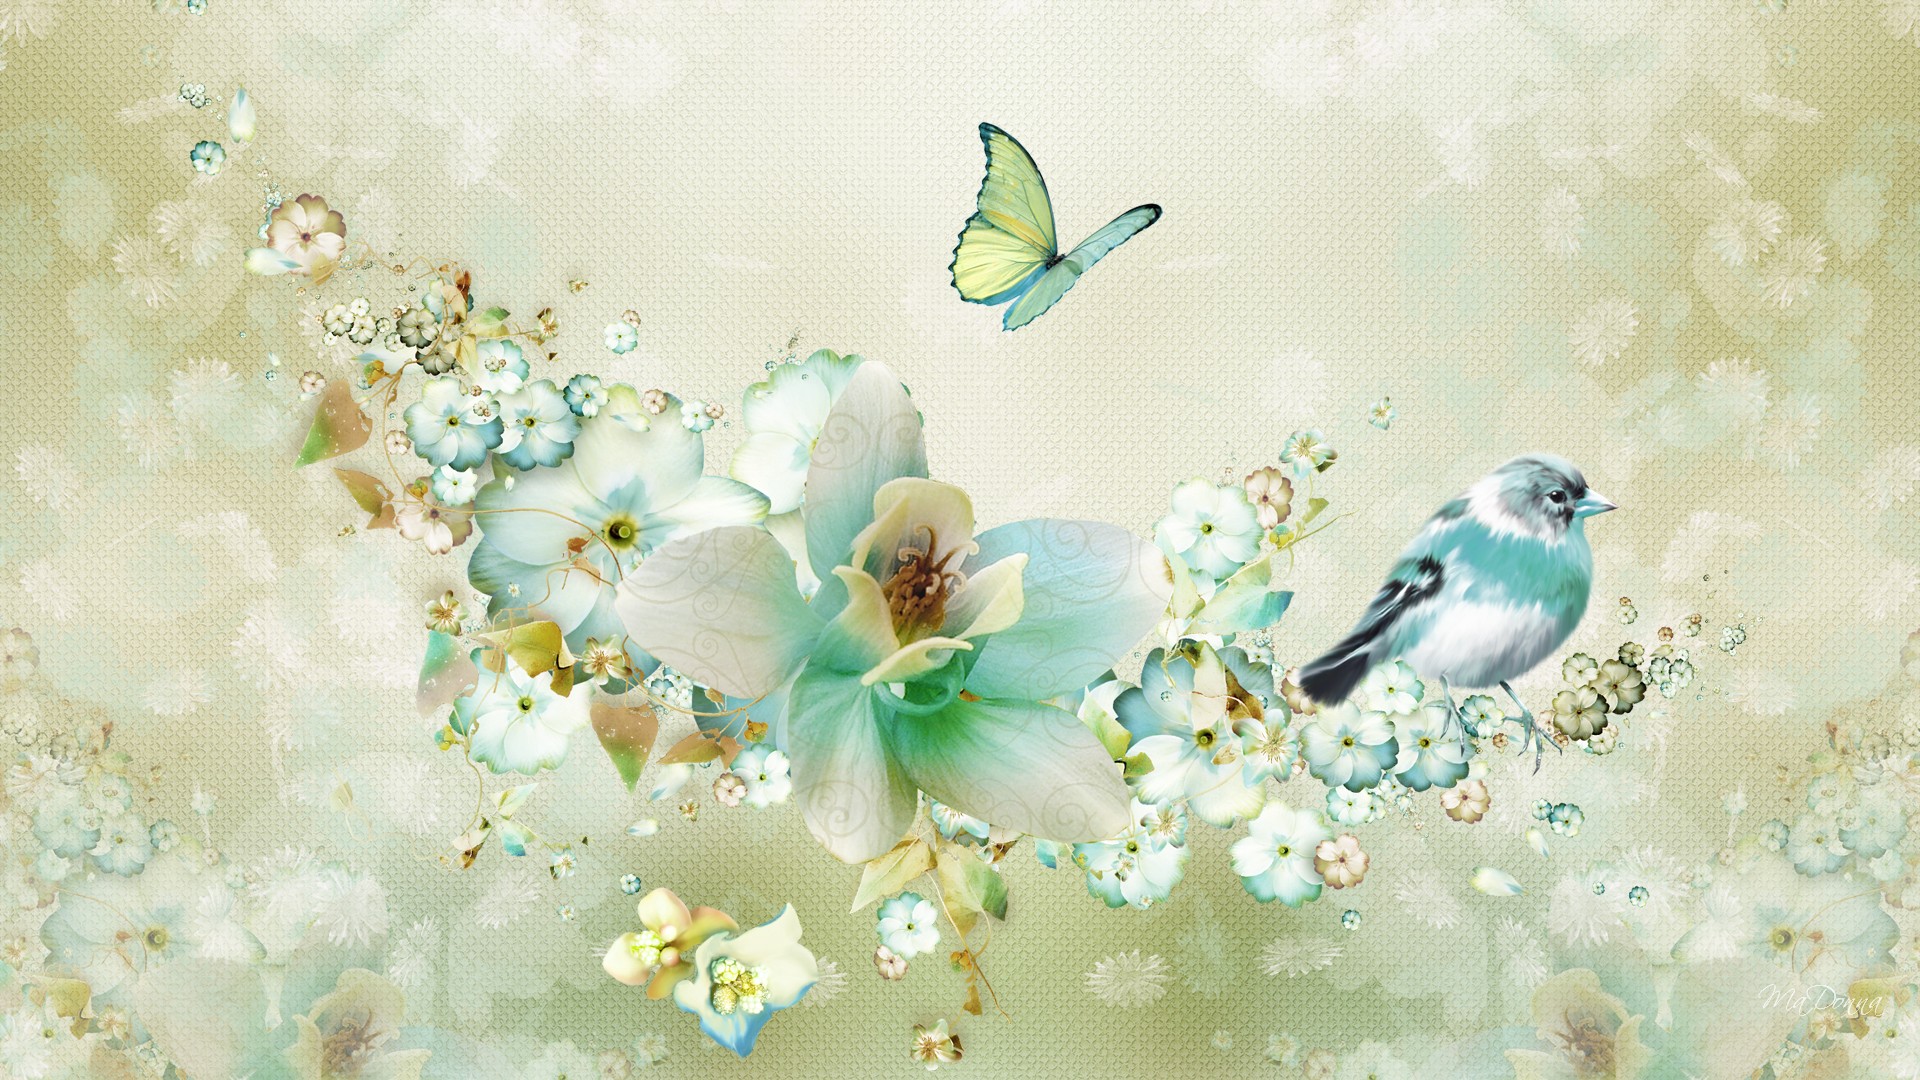 Flowers Birds and Butterfly wallpaper   ForWallpapercom 1920x1080